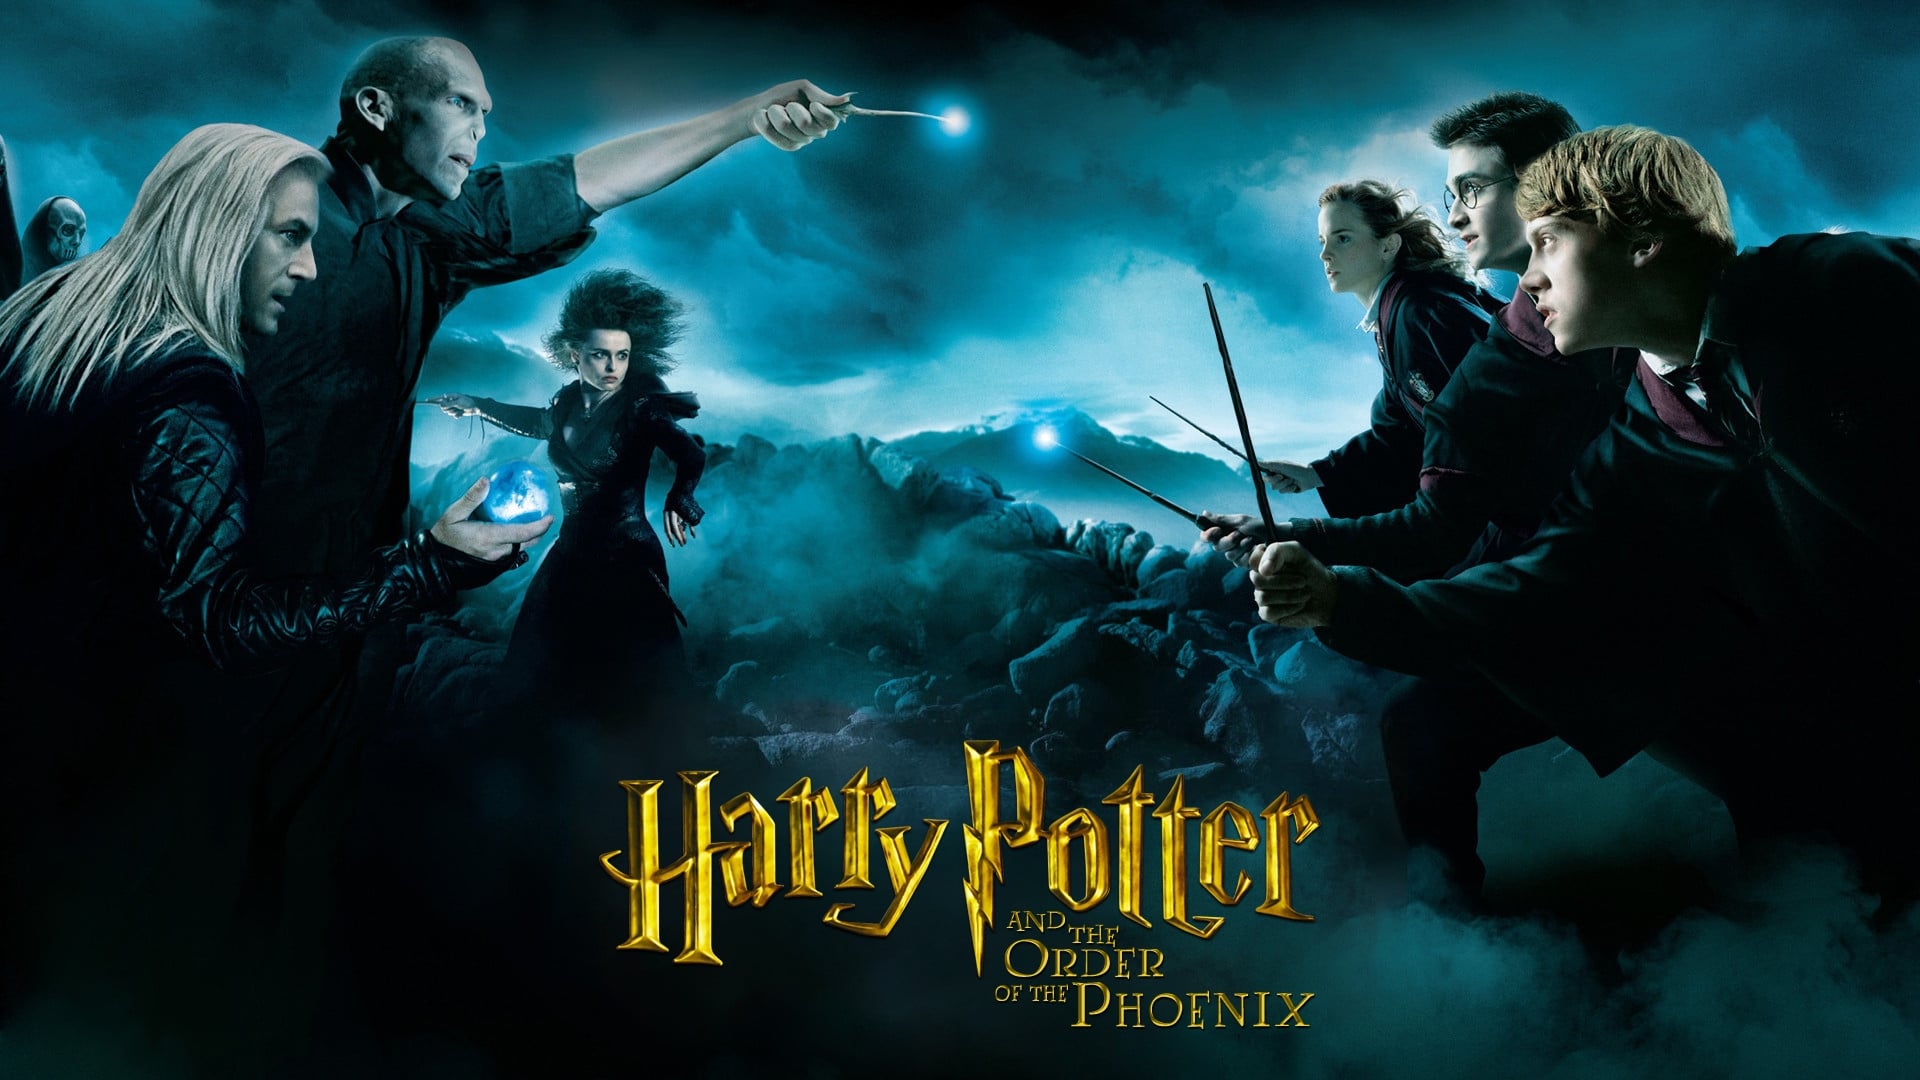 Harry Potter și Ordinul Phoenix (2007)